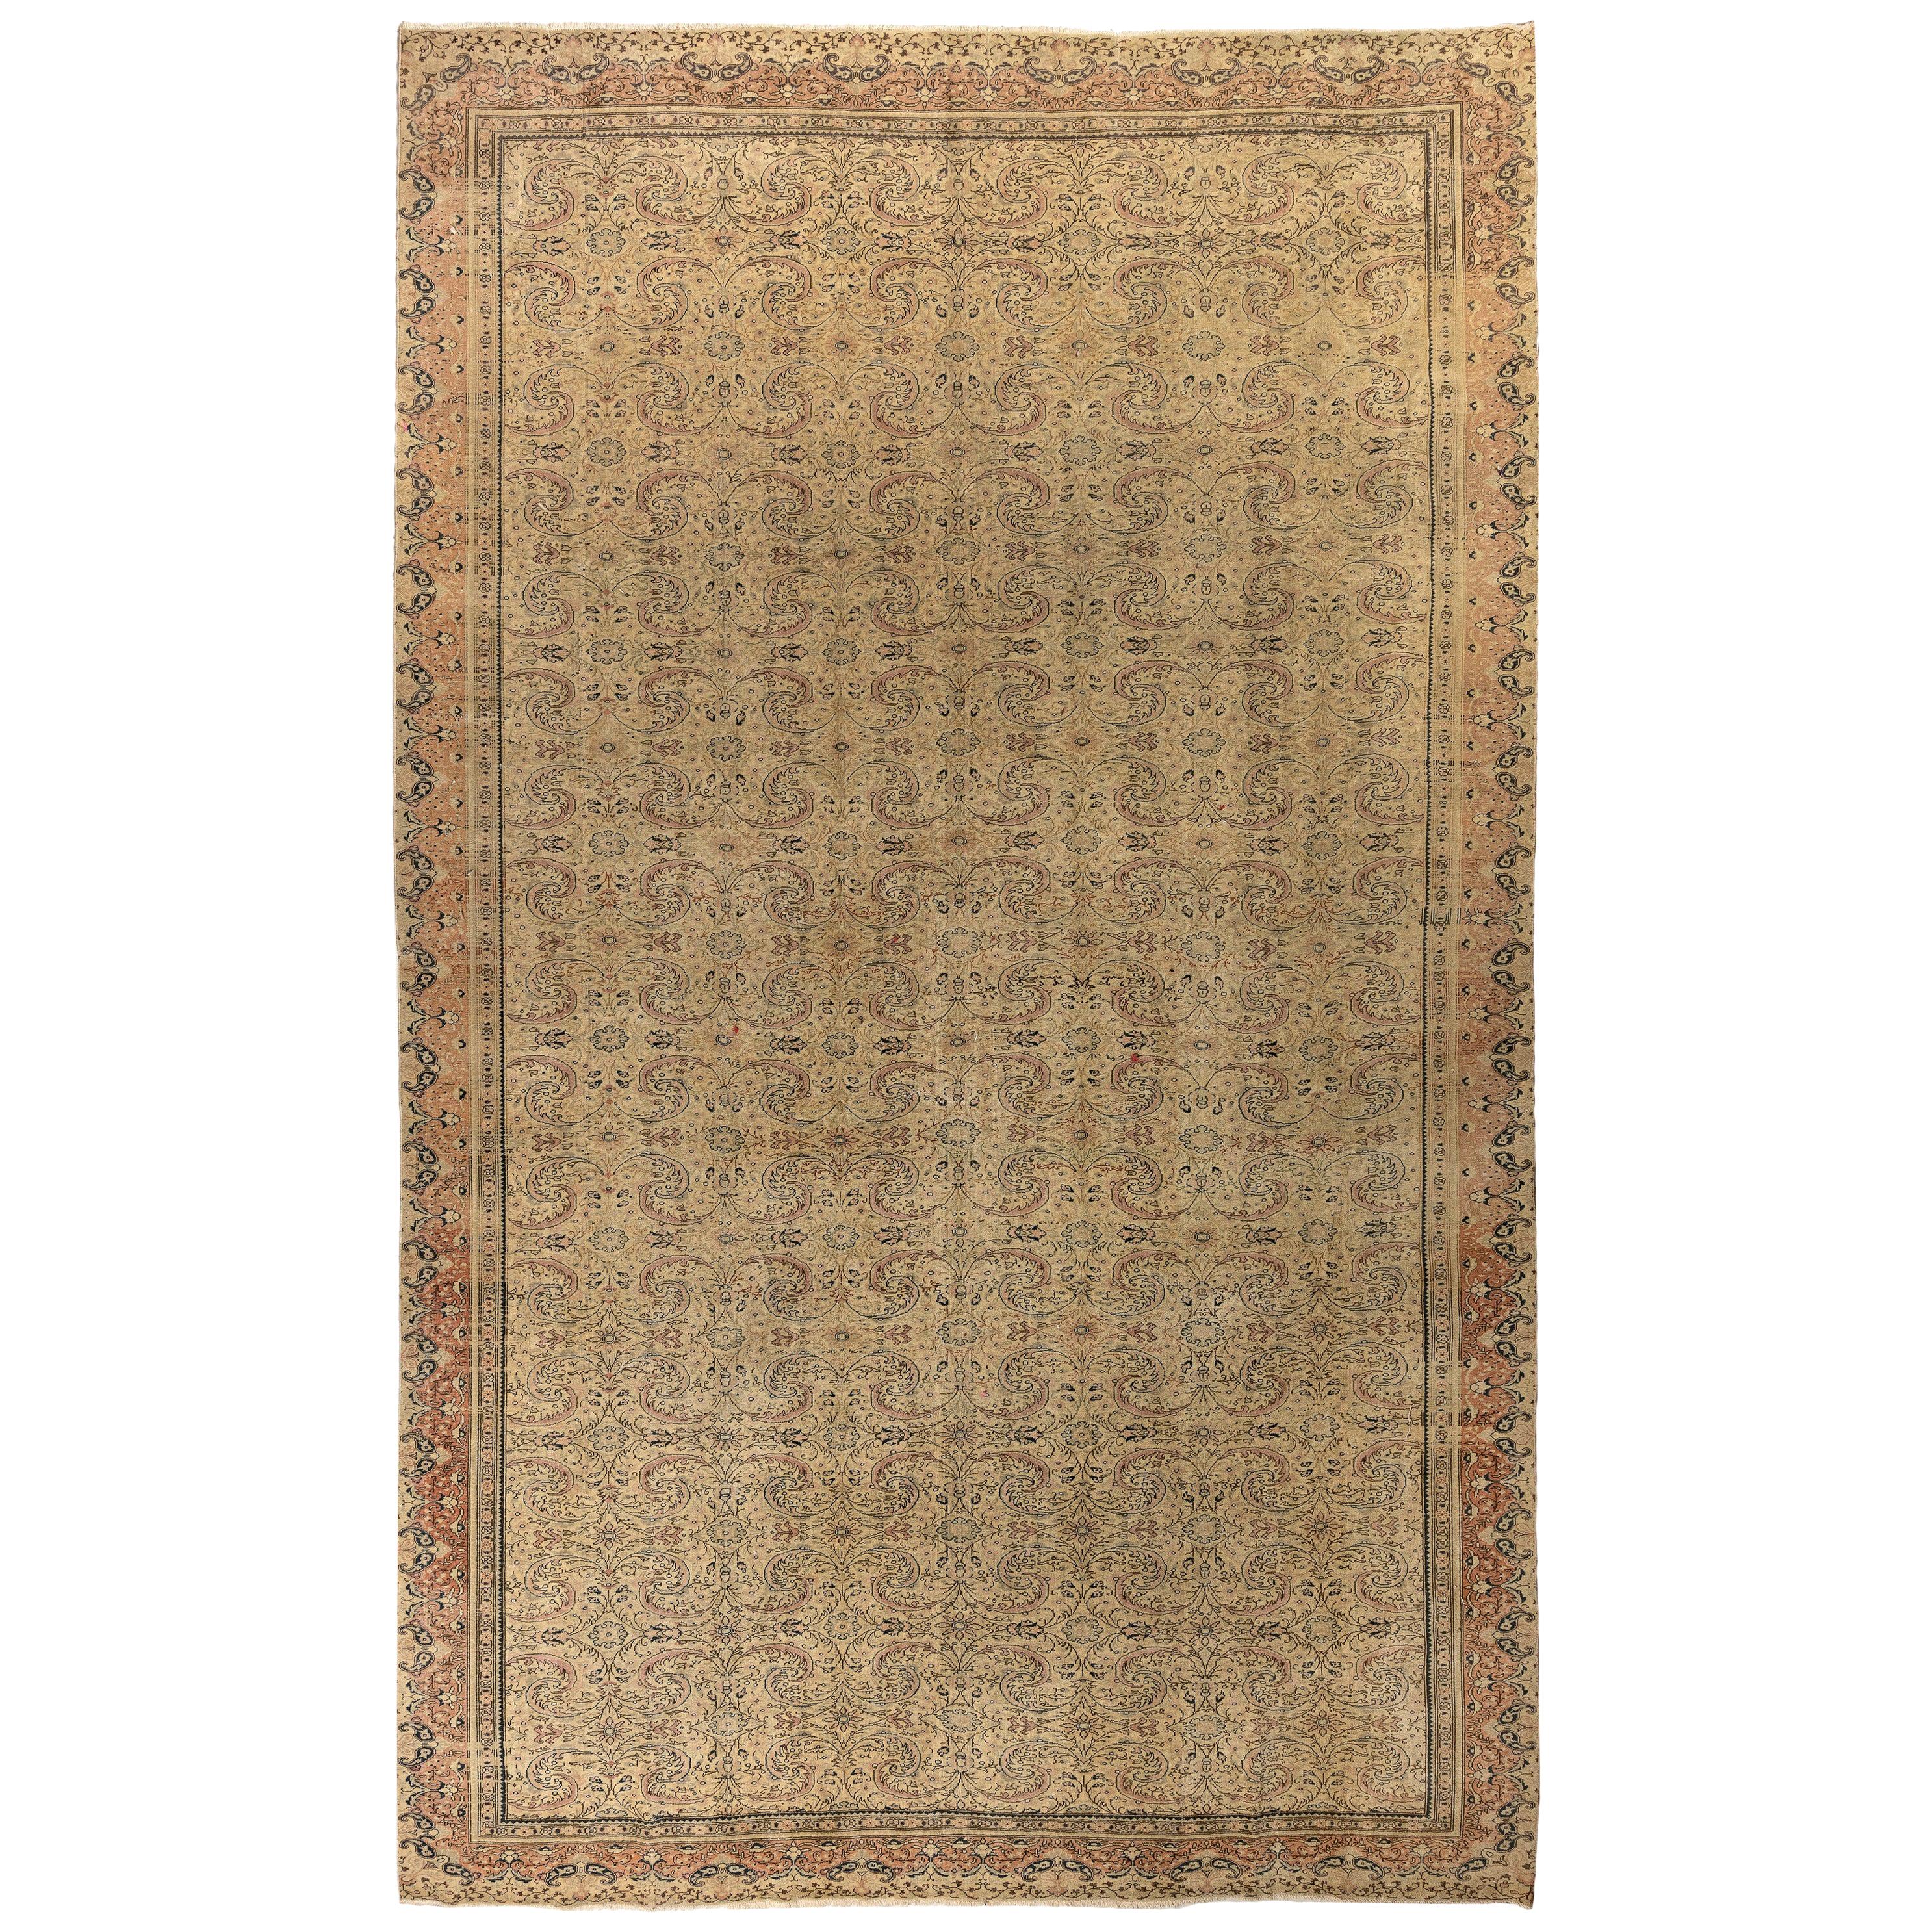 Très beau tapis turc Sivas vintage 10x13.7 Ft, tapis en laine, revêtement de sol